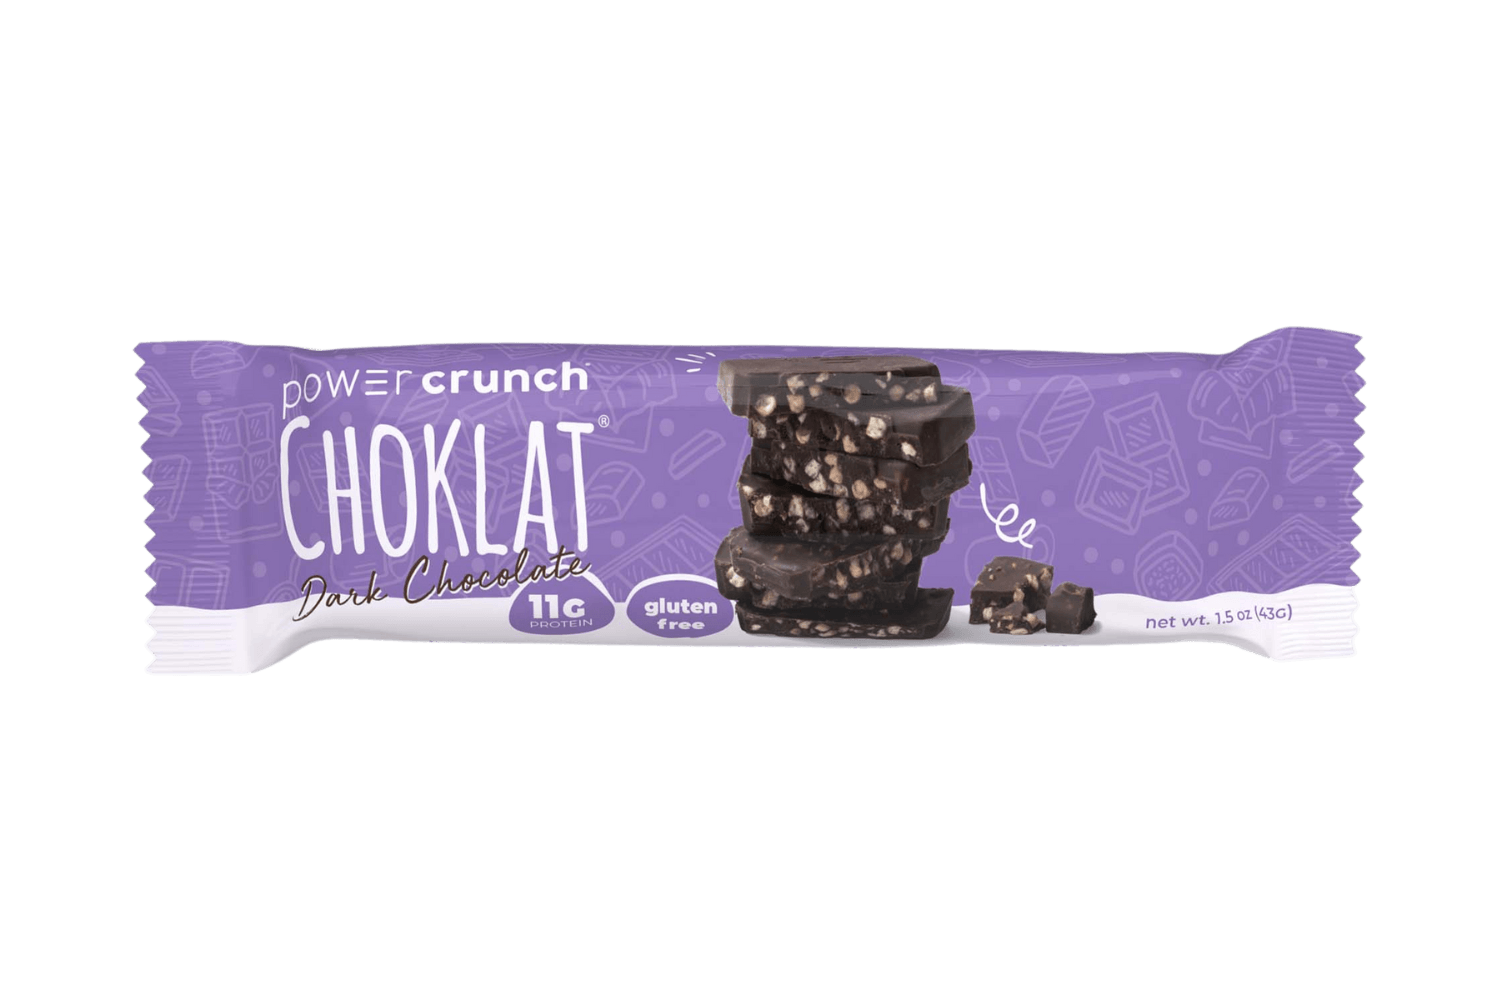 Power Crunch Choklat Dark Chocolate bars